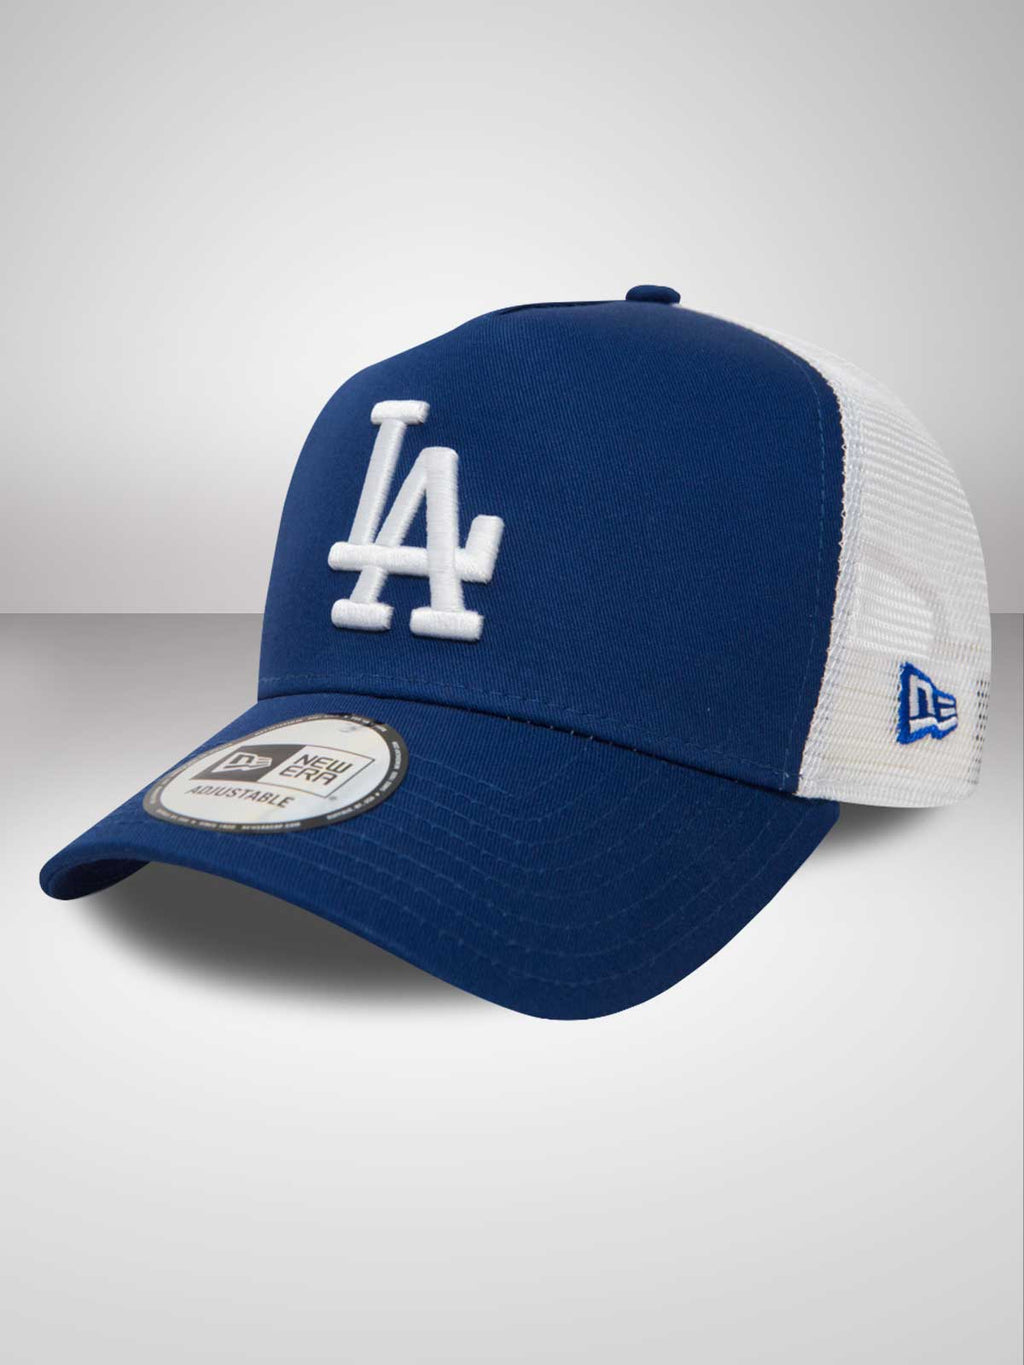 LA Dodgers Clean Blue A-Frame Trucker Cap - New Era – Shop The Arena